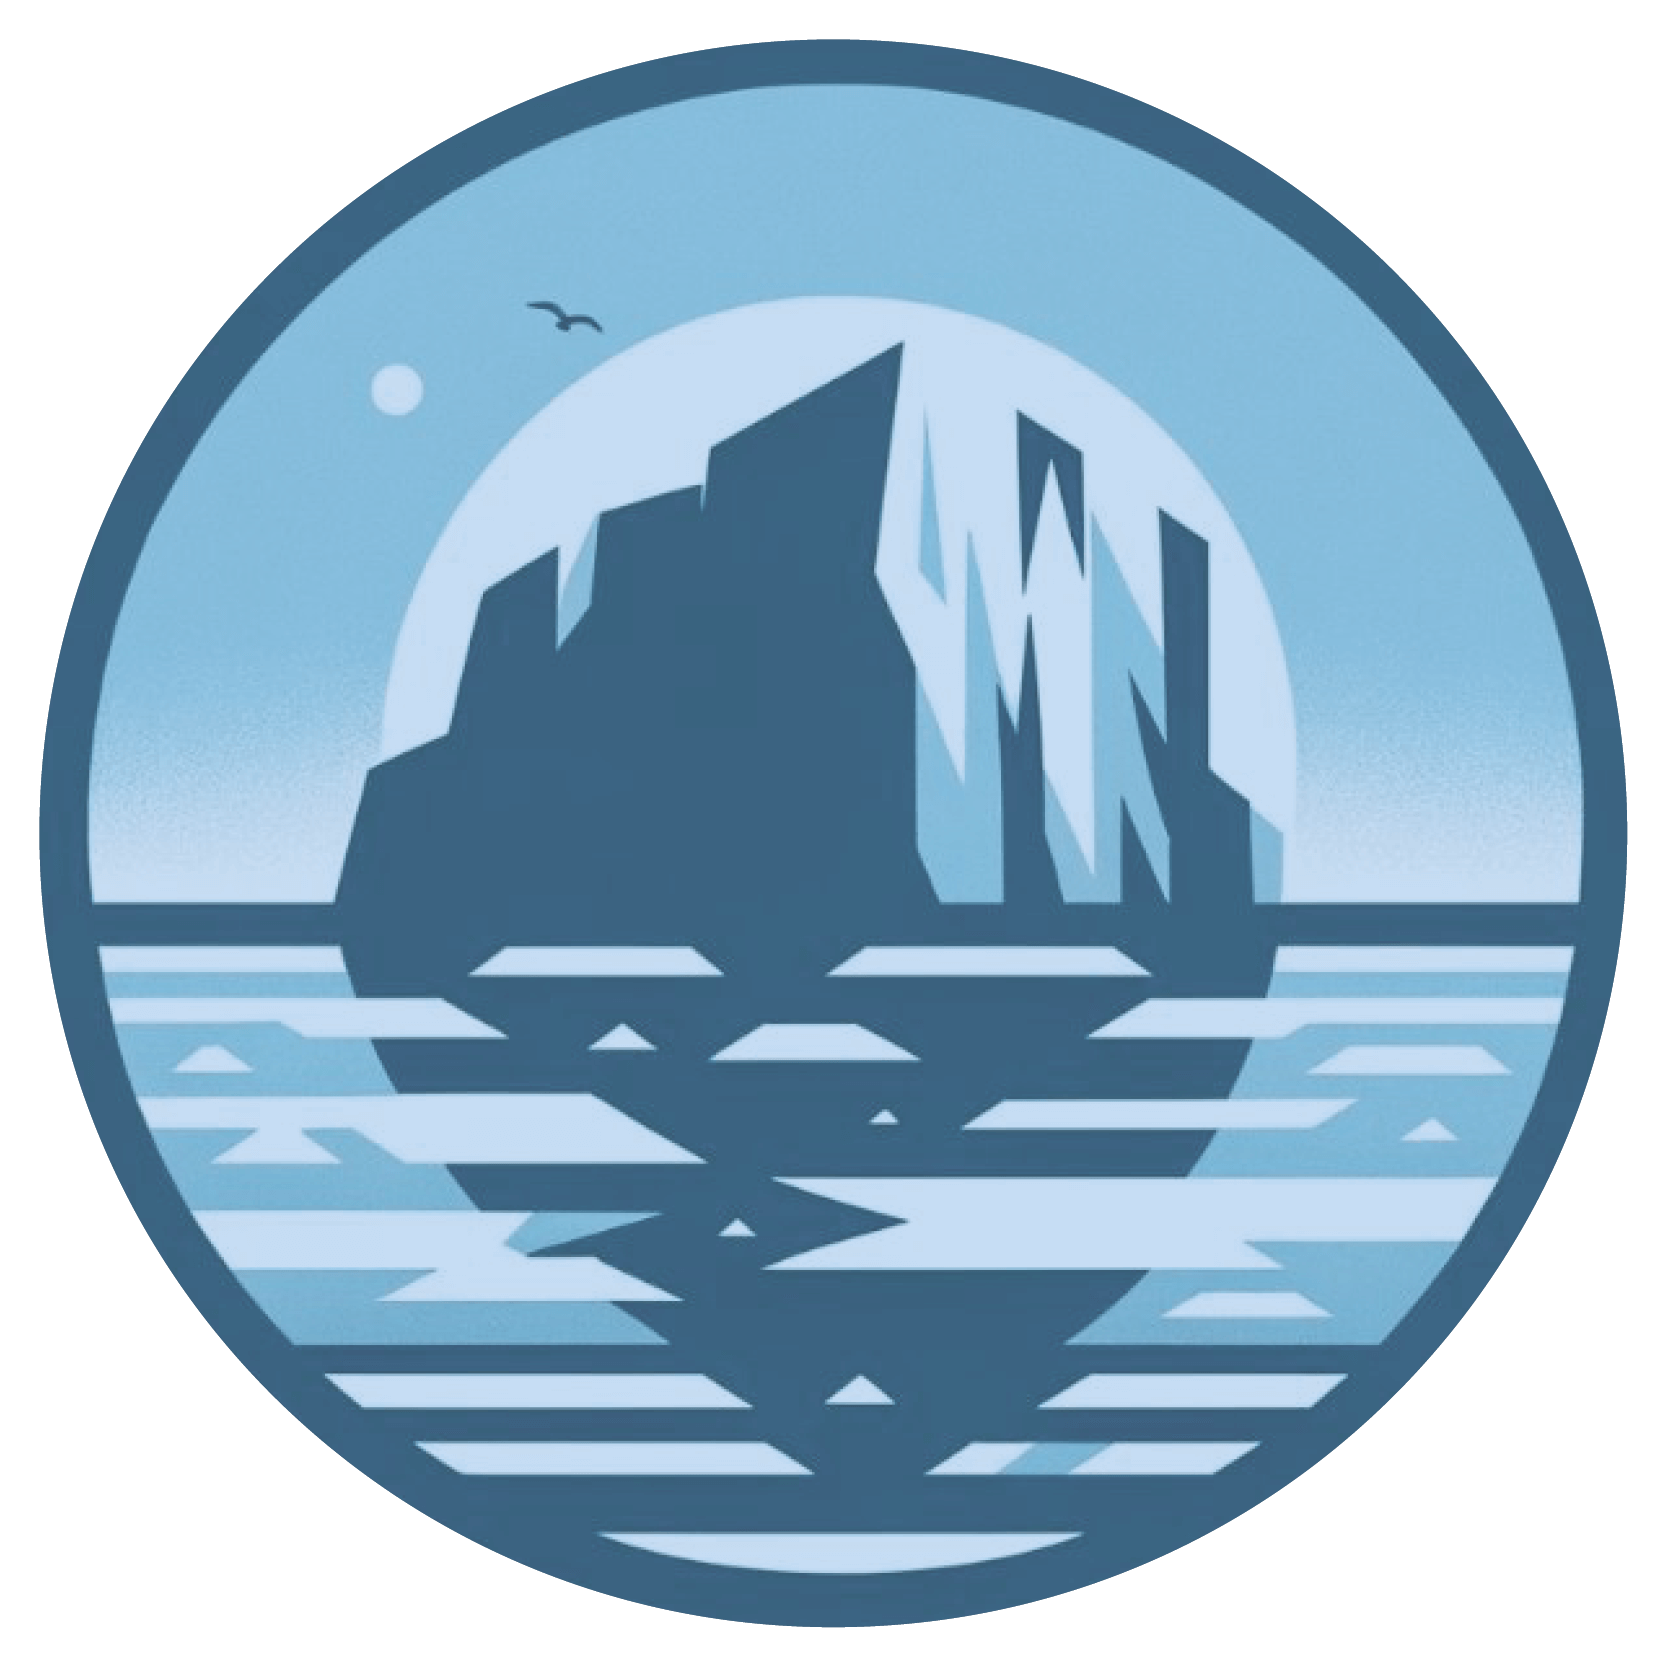 Iceberg e Pack